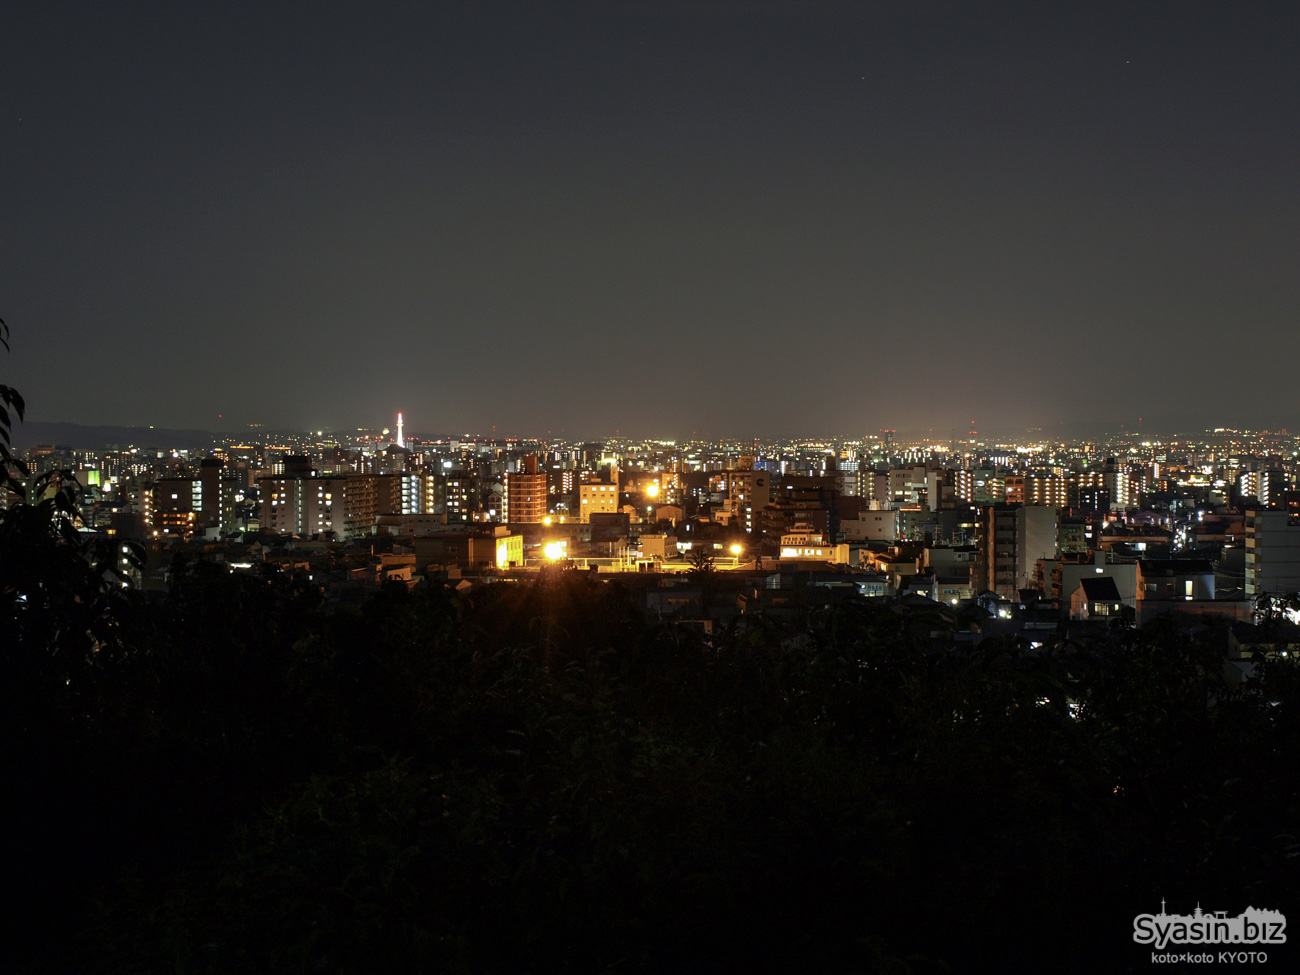 船岡山公園の夜景 – 京都市北区